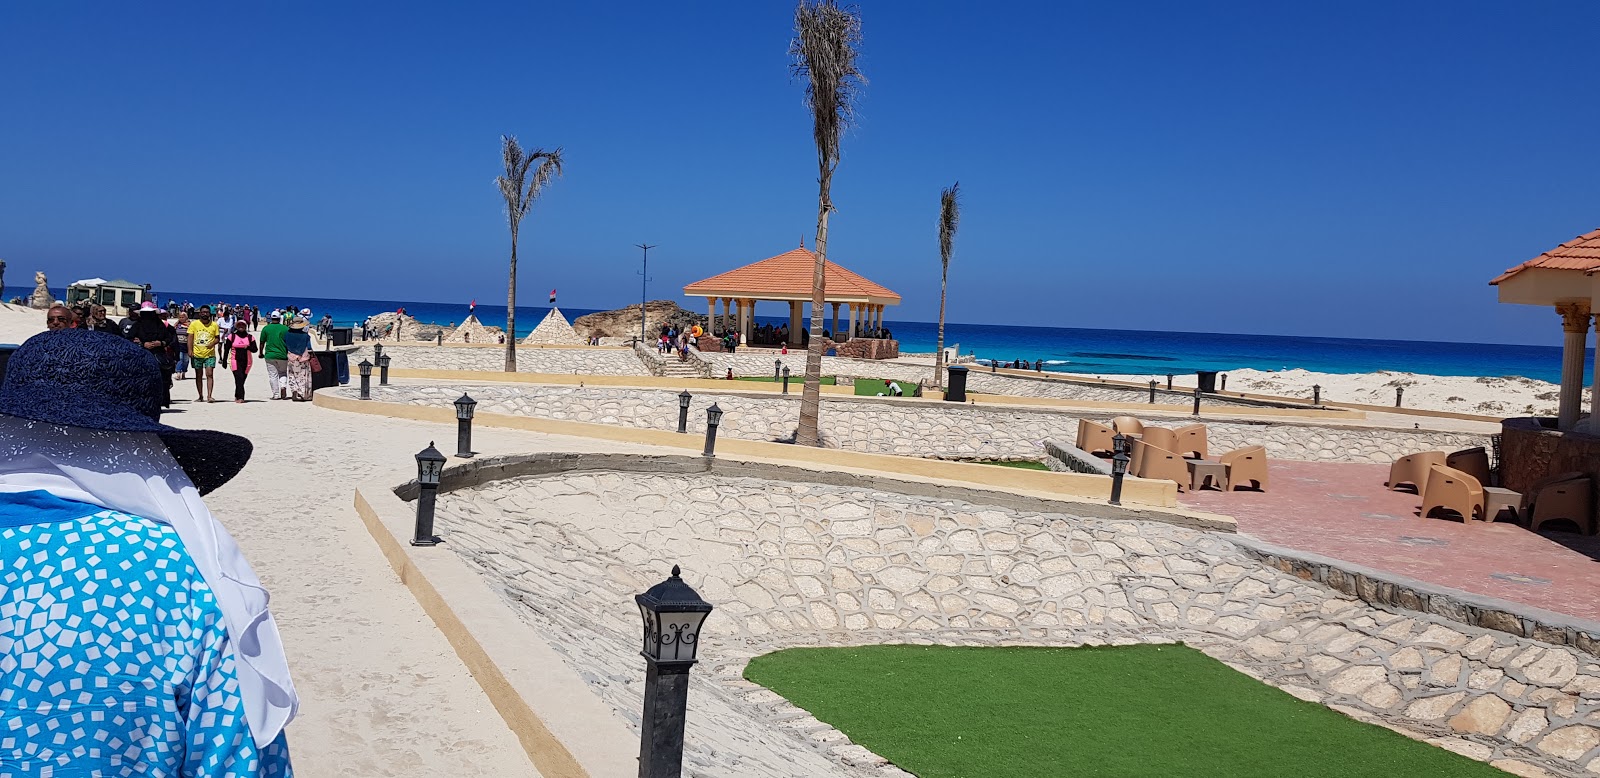 Foto af Eagles Resort in Cleopatra Beach - anbefales til familie rejsende med børn